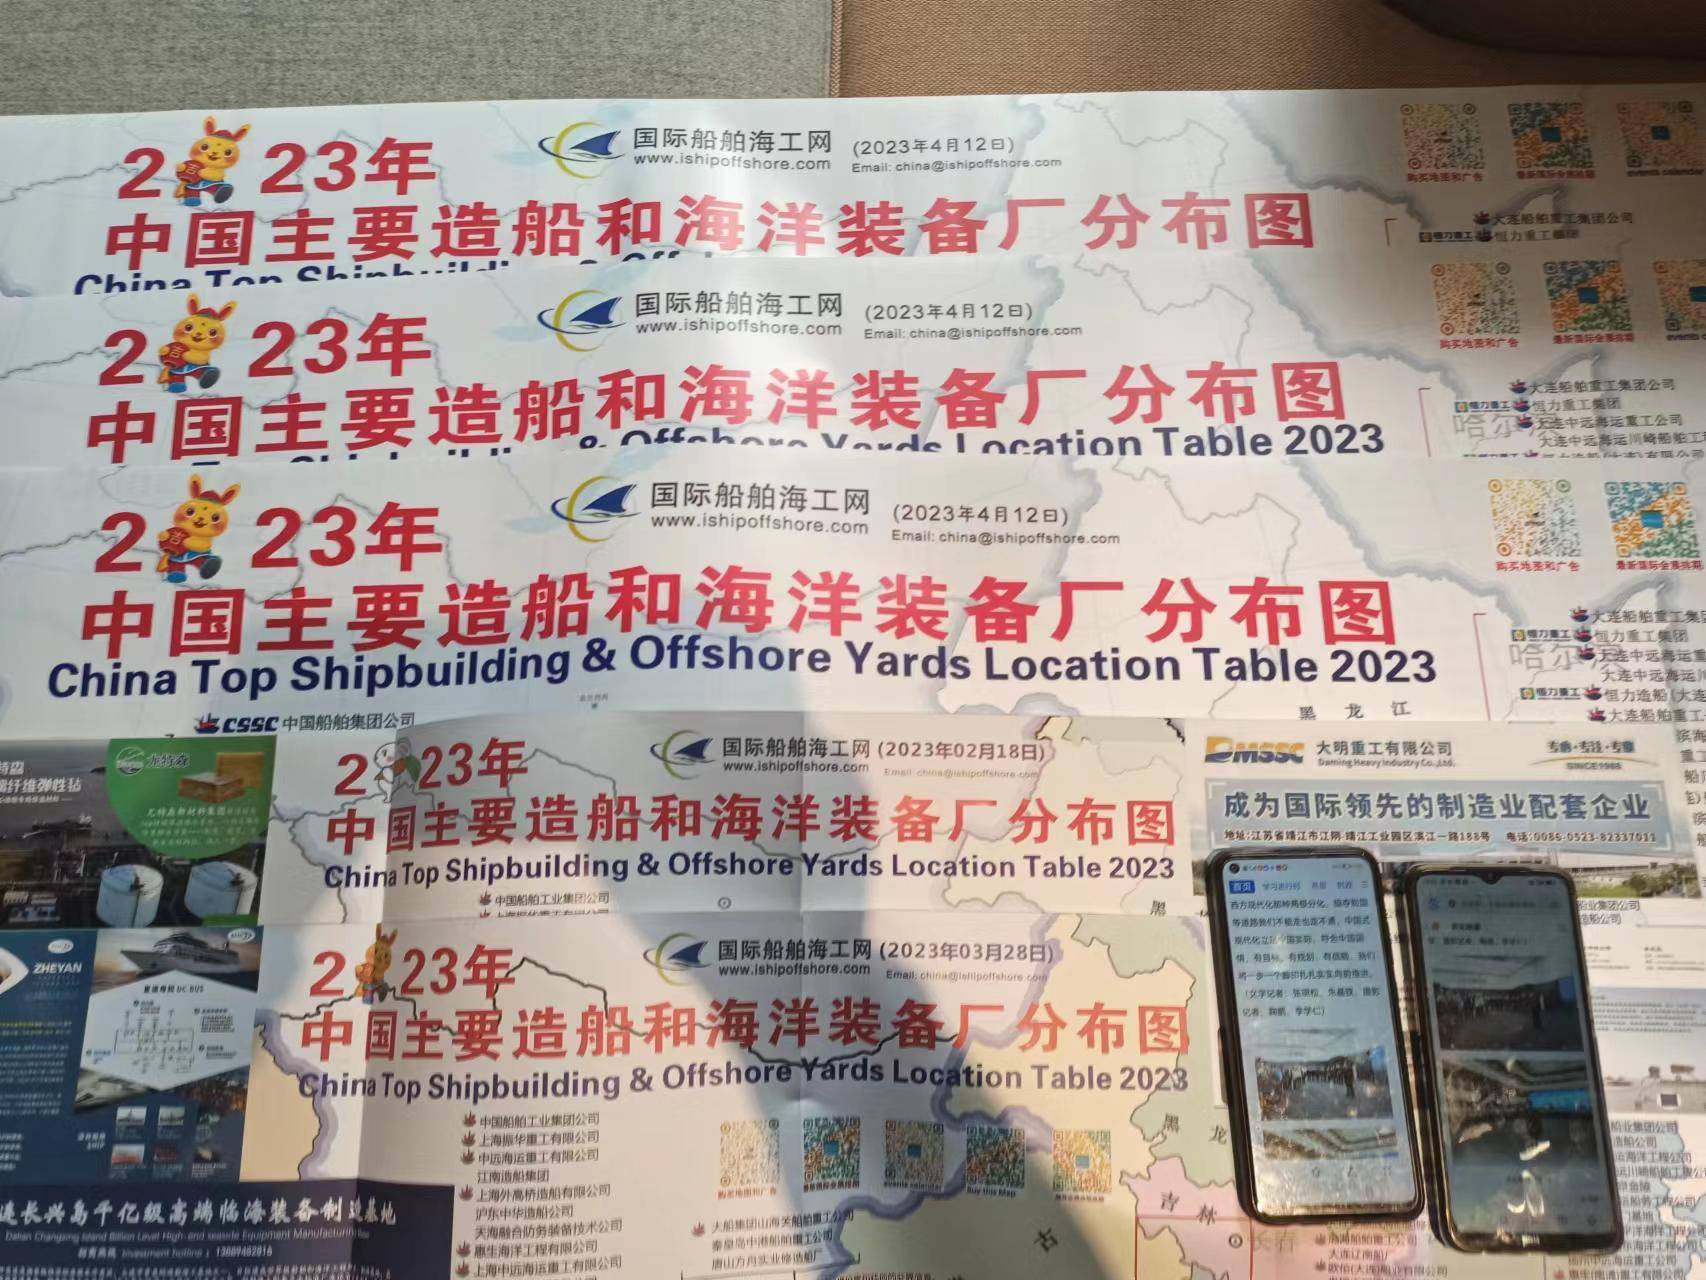 广告版的小苹果:2023年超大版造船厂地图在上海成功发布，最新排列有300多家船厂